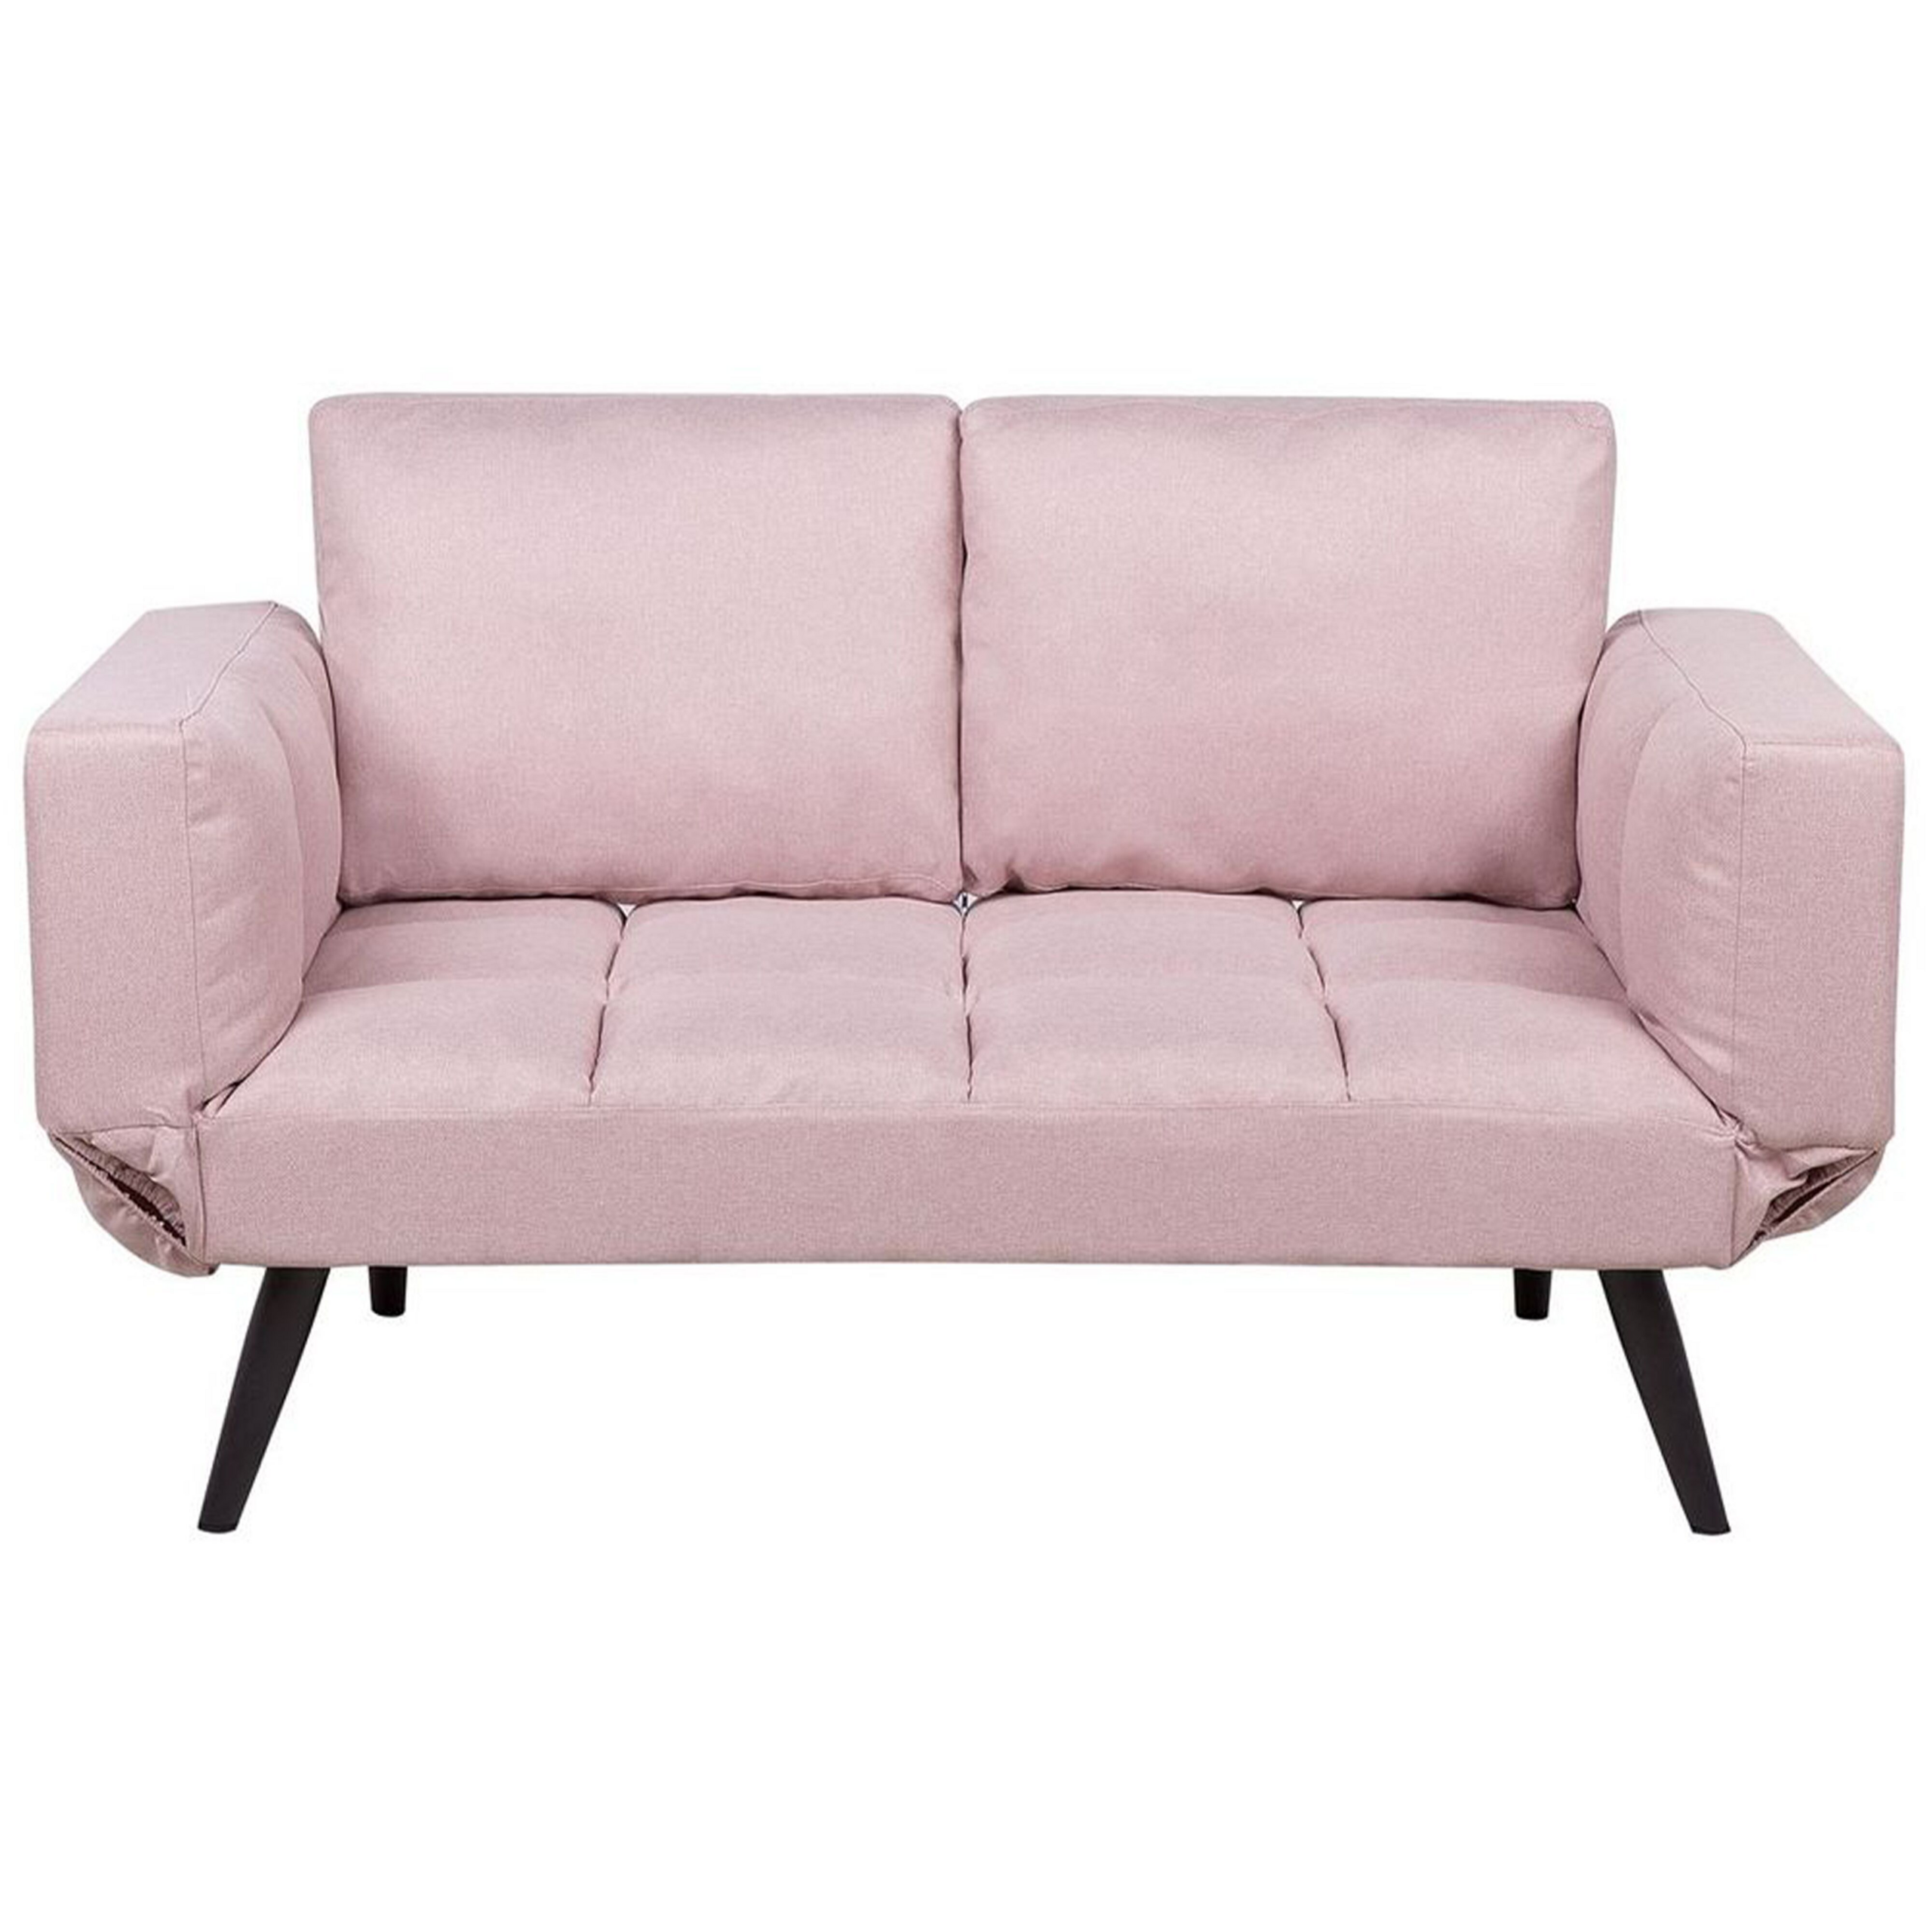 Beliani Sofa Bed Pink Loveseat Adjustable Armrests Minimalist